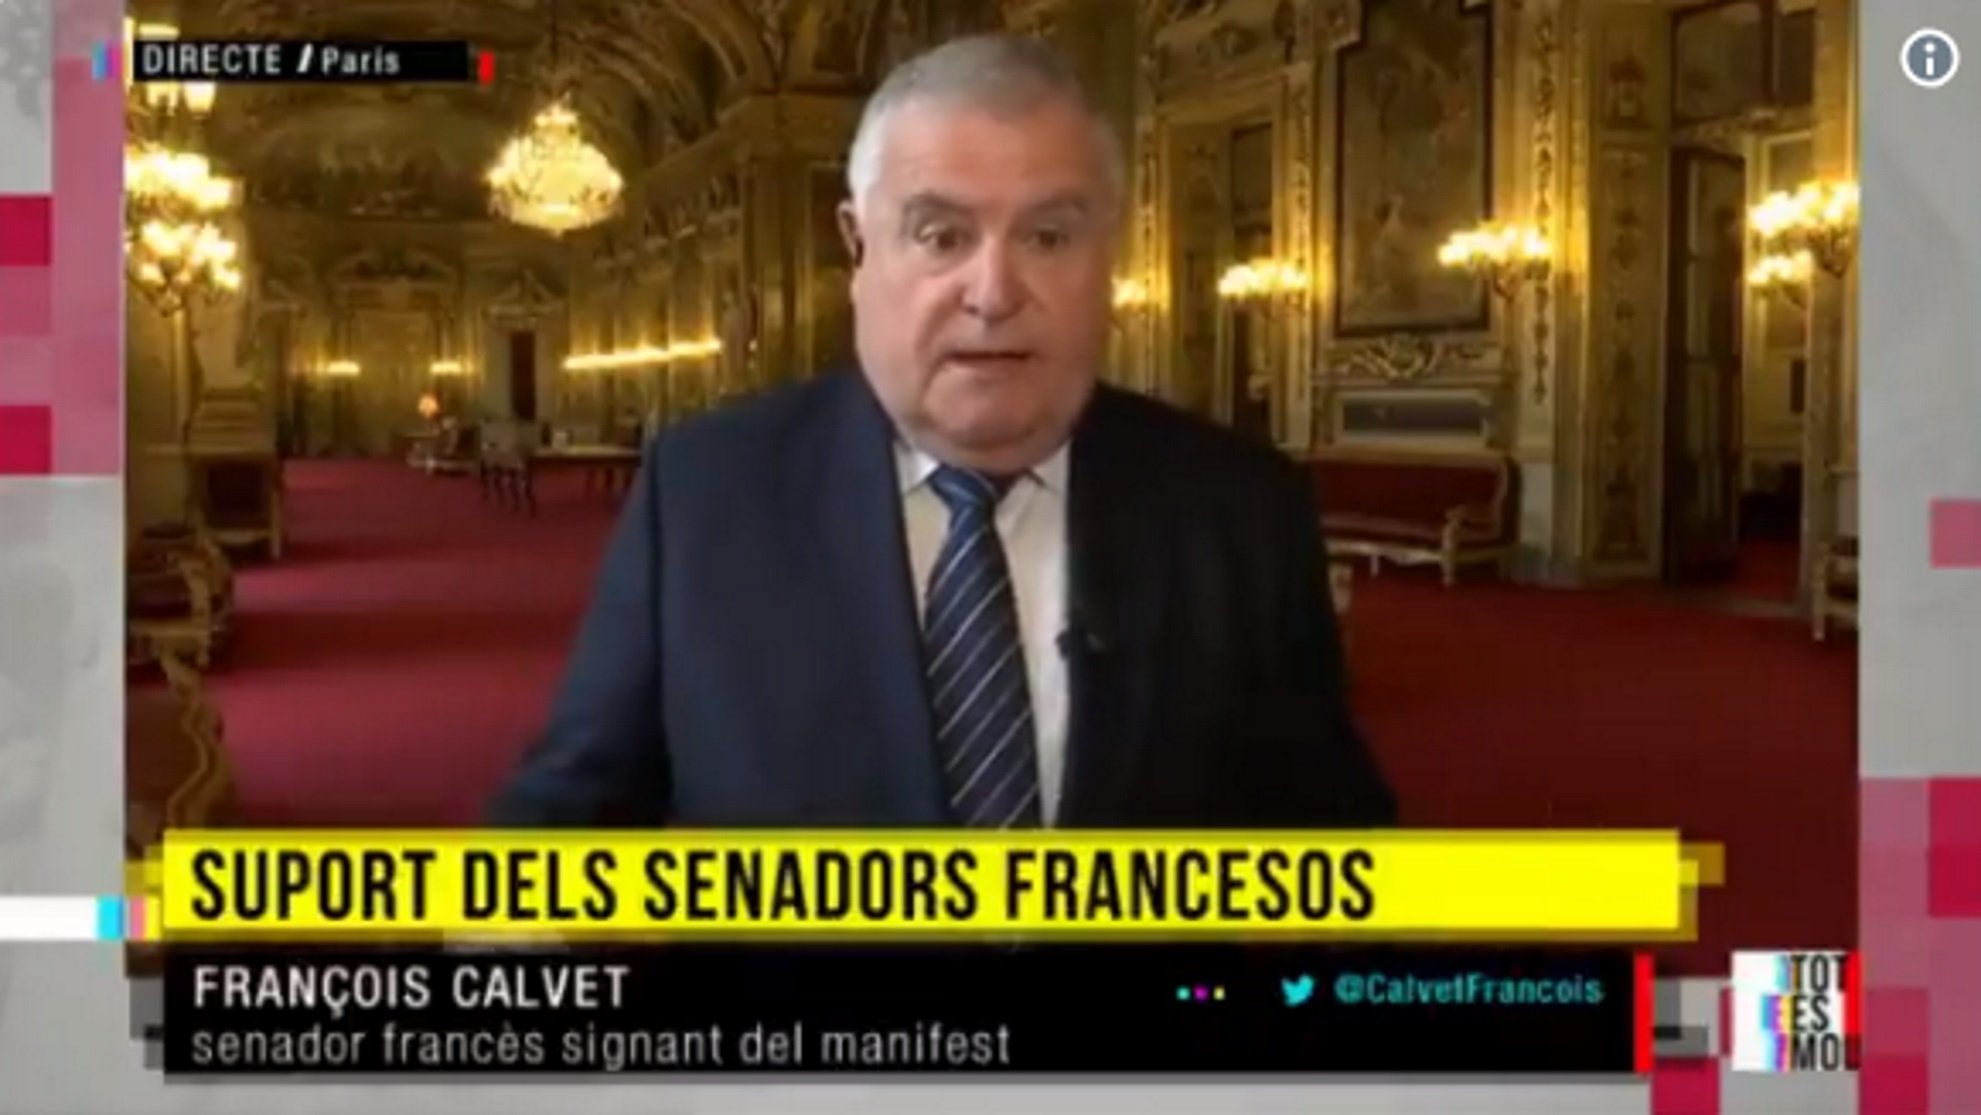 Segueixen les crítiques de senadors francesos: "Espanya no és una democràcia en justícia"